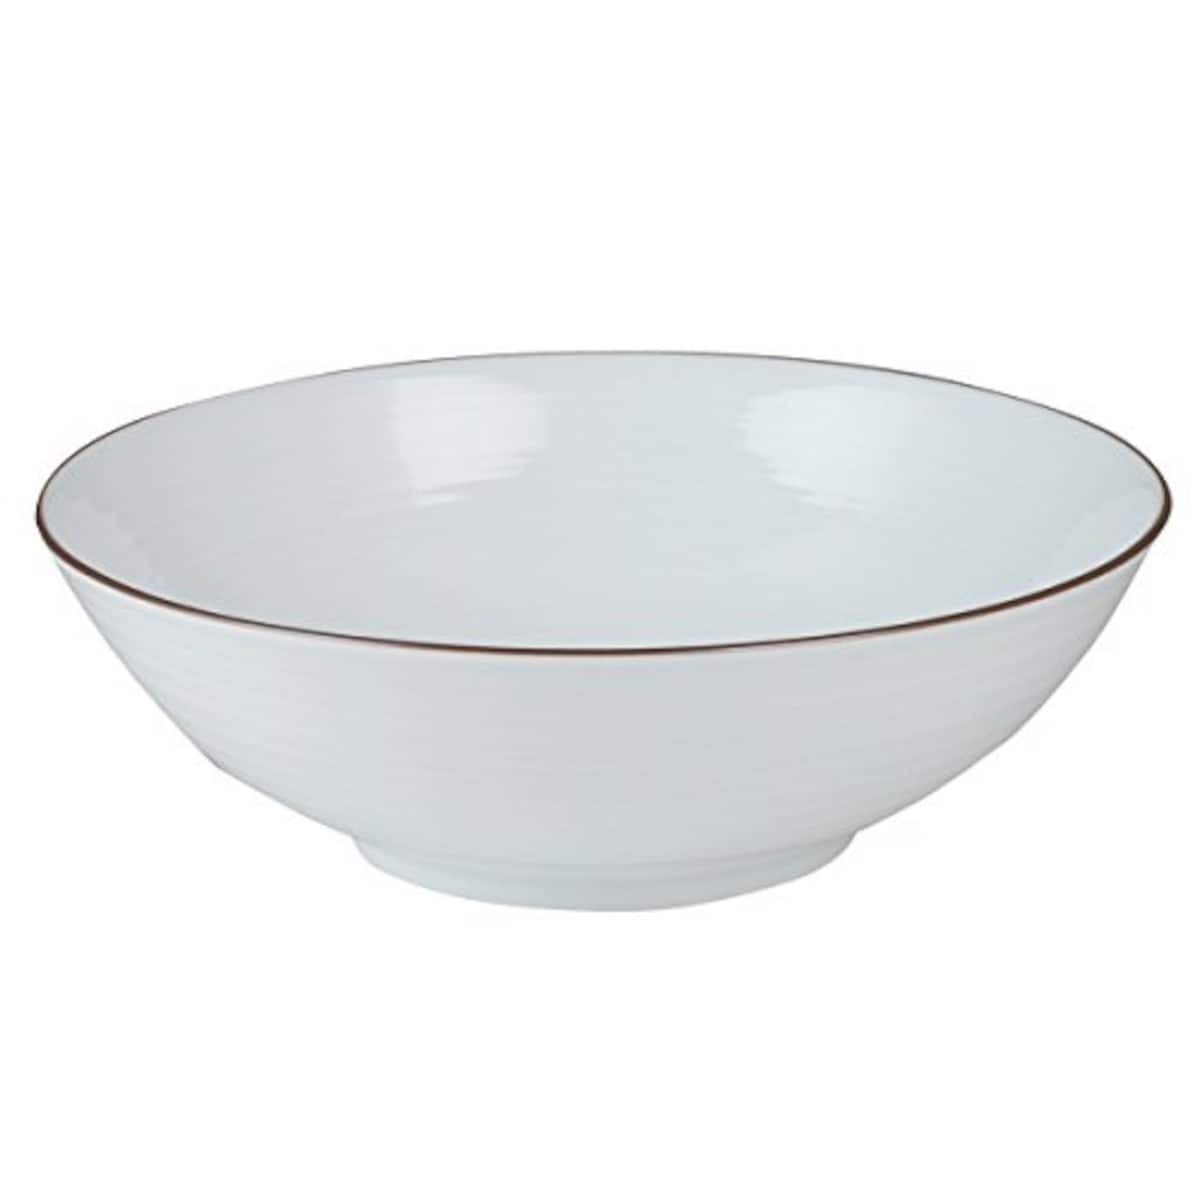 白山陶器 白磁千段 HAKUJISENDAN 6寸平鉢 φ17.5x5.5cm画像